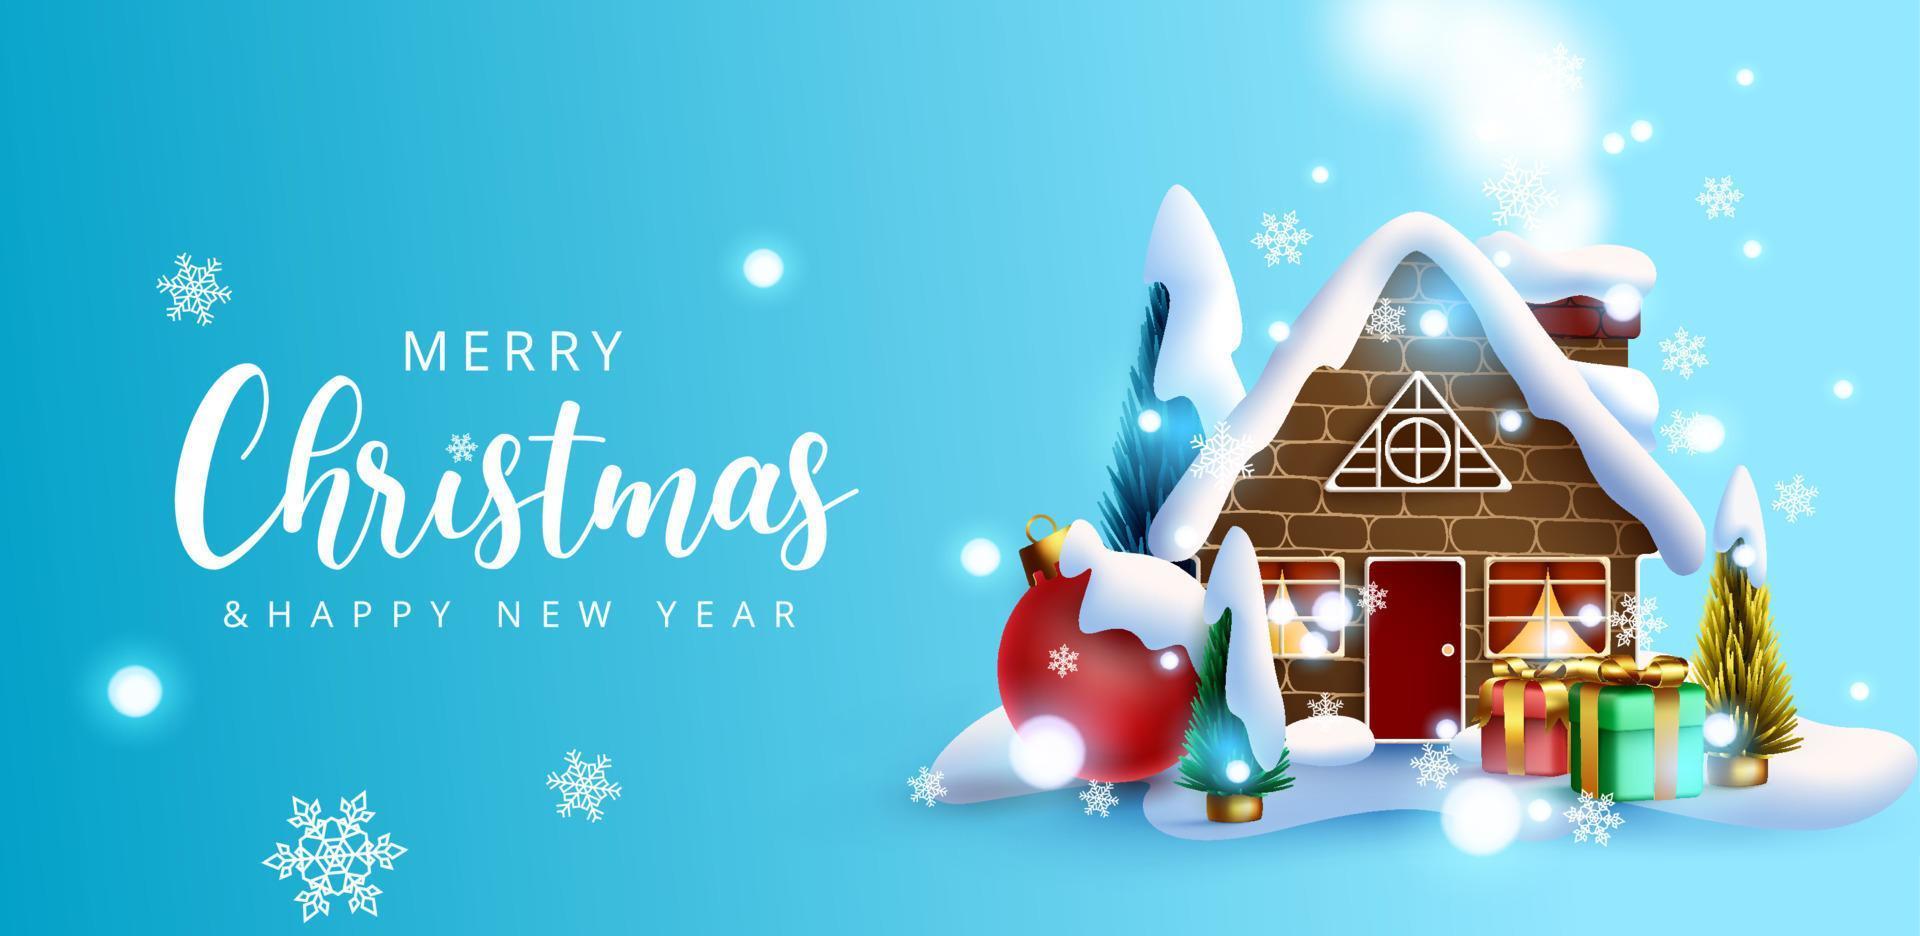 diseño de fondo de vector de Navidad. Feliz Navidad saludo texto con casa en miniatura, árboles y elementos de bola en la celebración navideña de nieve helada. ilustración vectorial